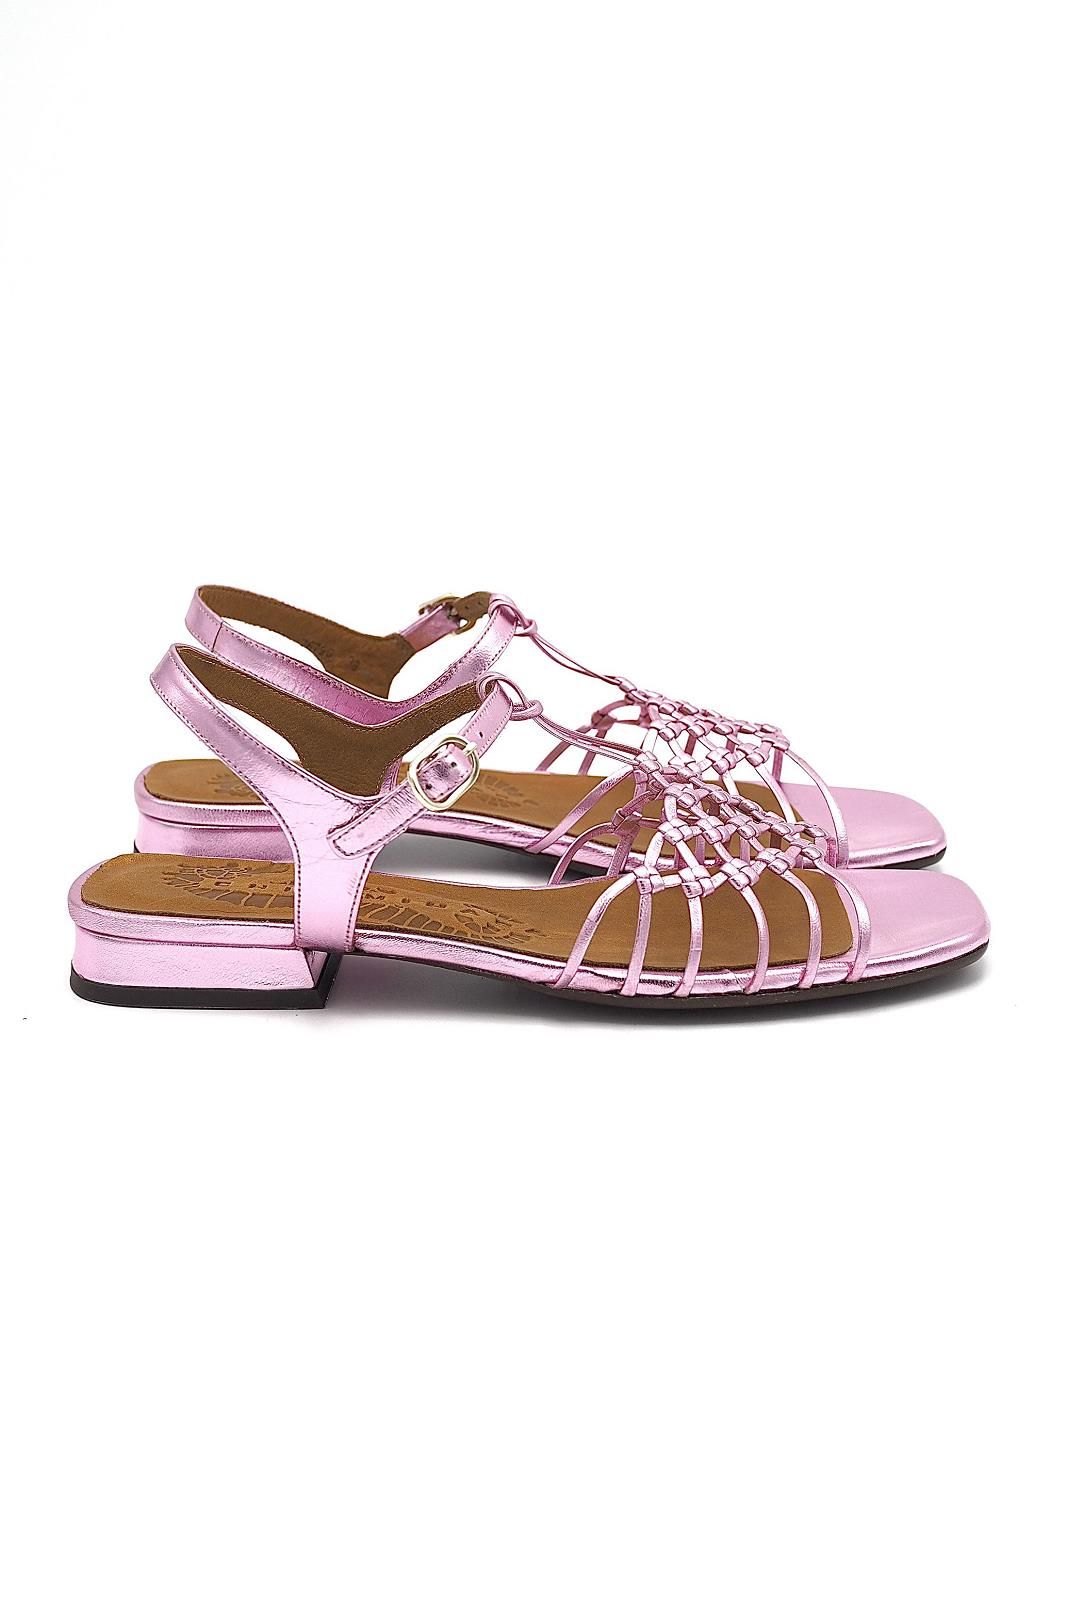 Sandales plates en cuir rose métal CHIE MIHARA | Marine